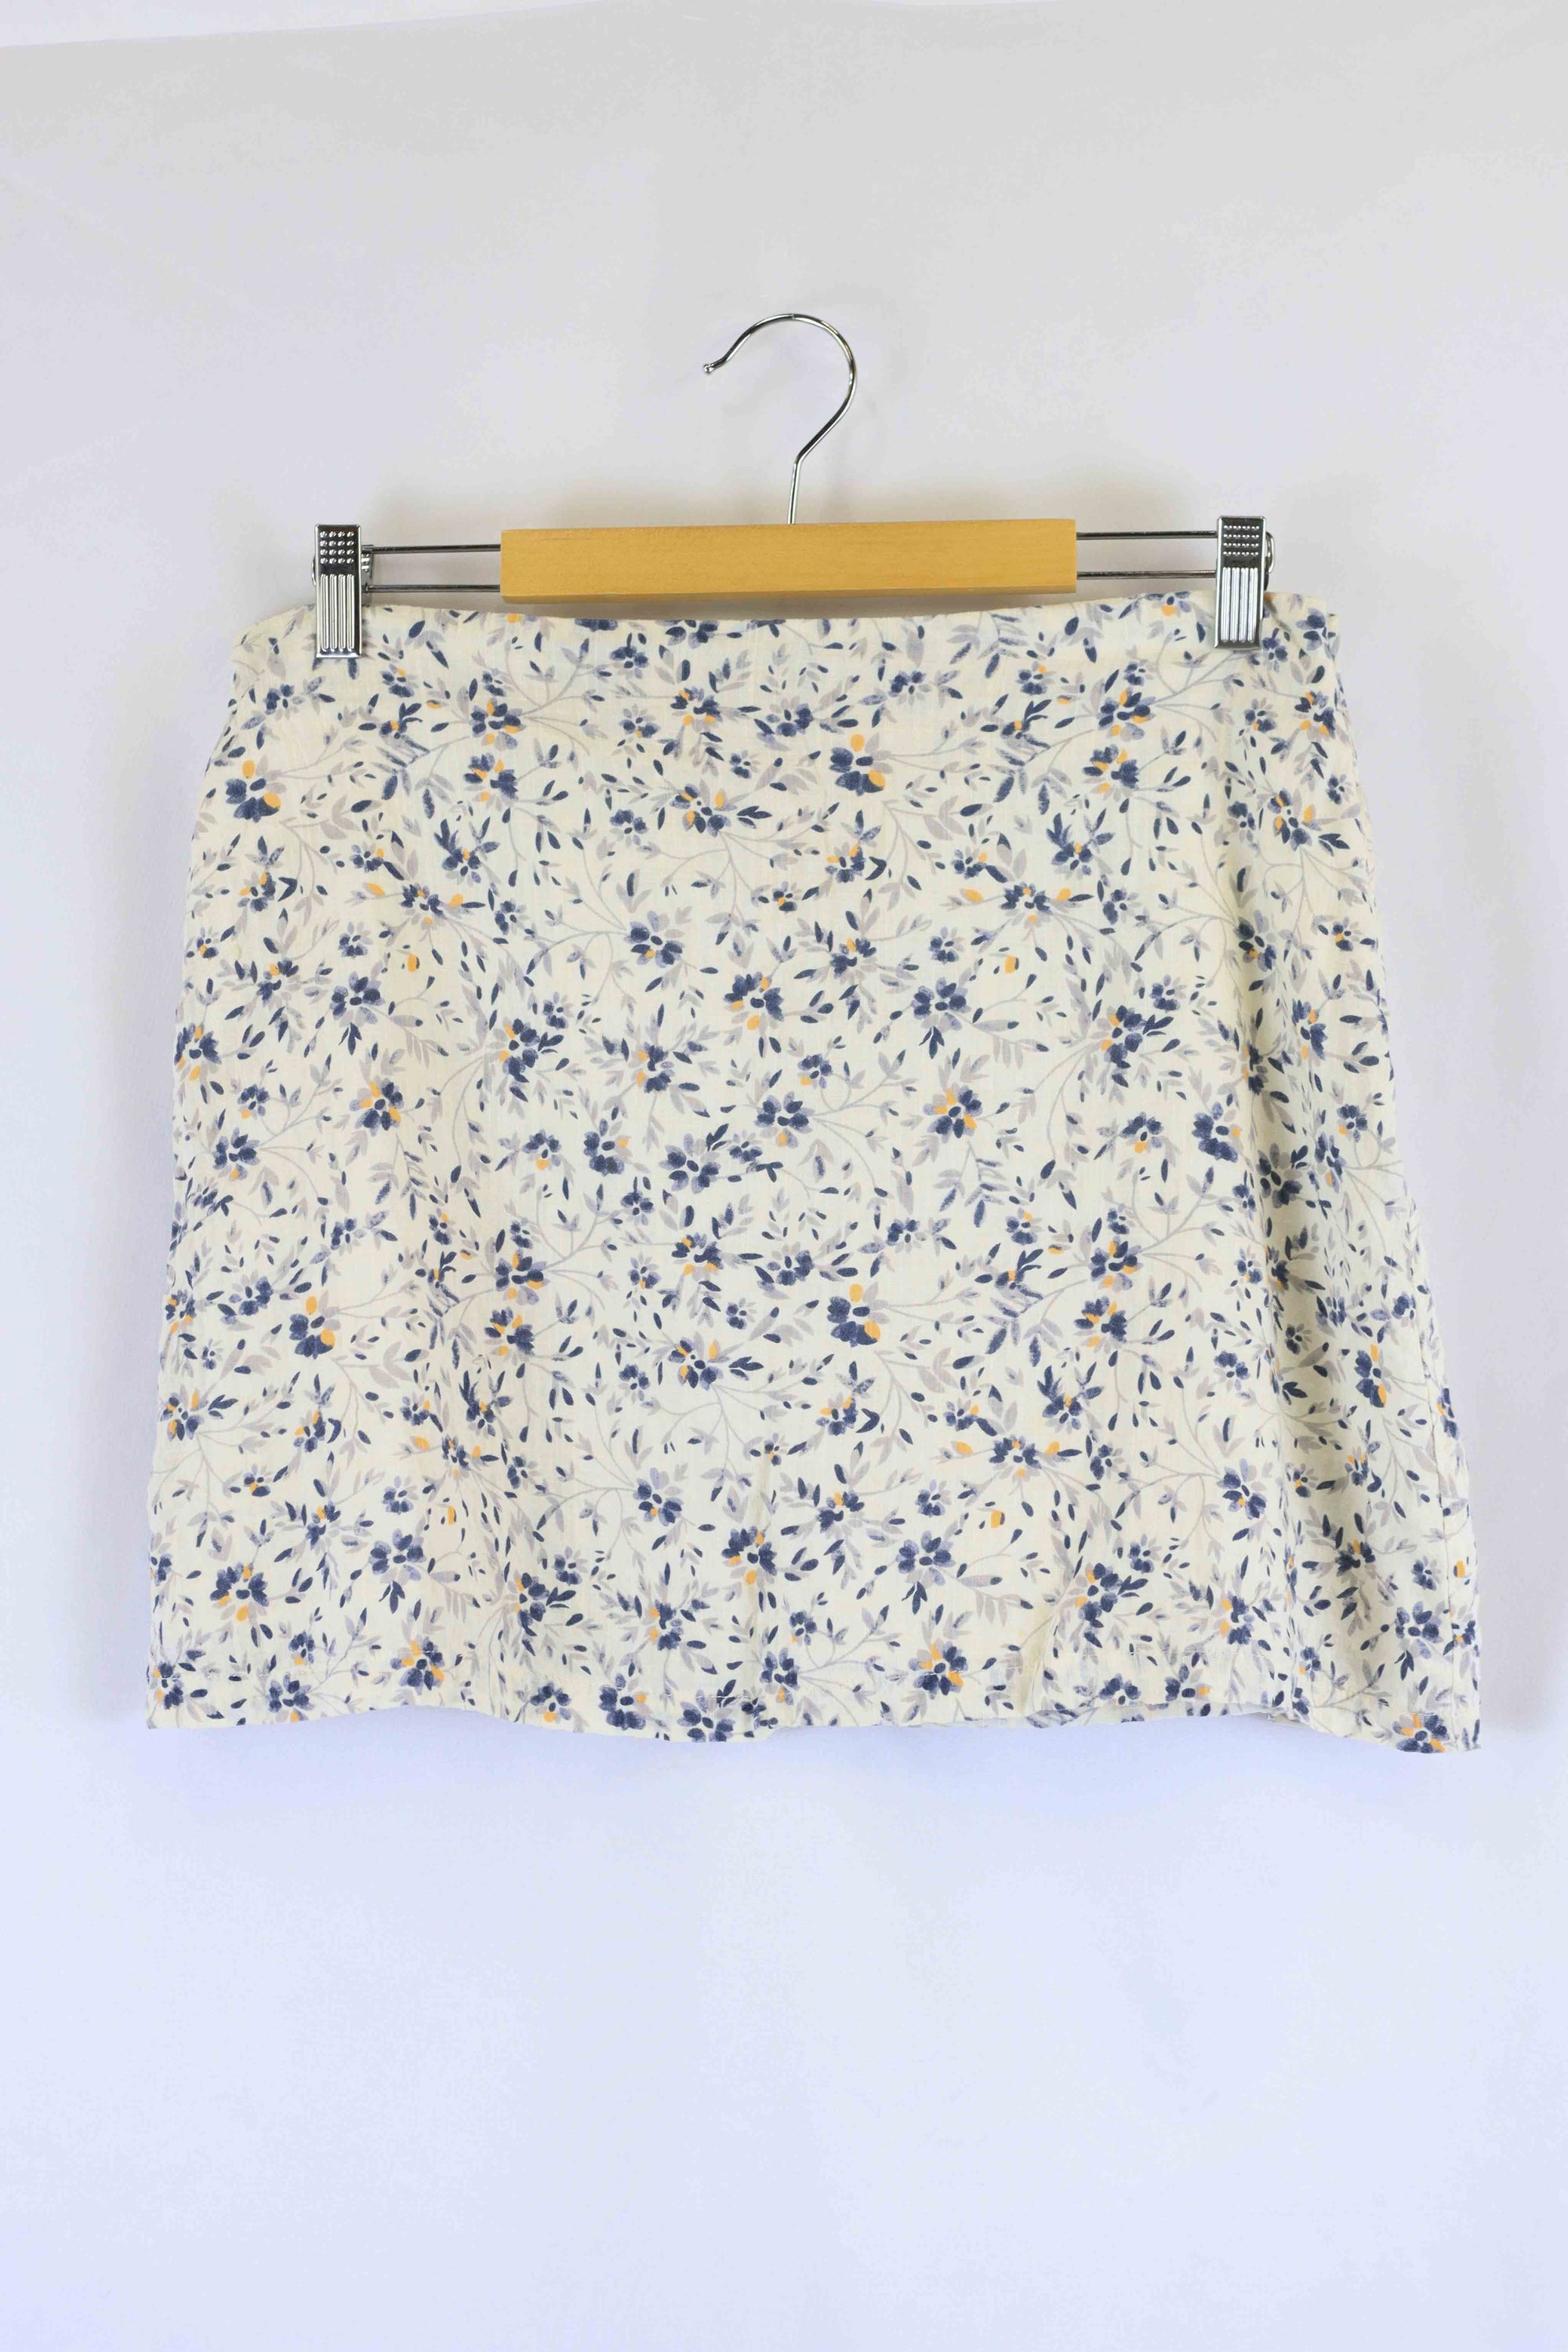 Jeanswest Light Blue Denim Mini Skirt 12 - Reluv Clothing Australia